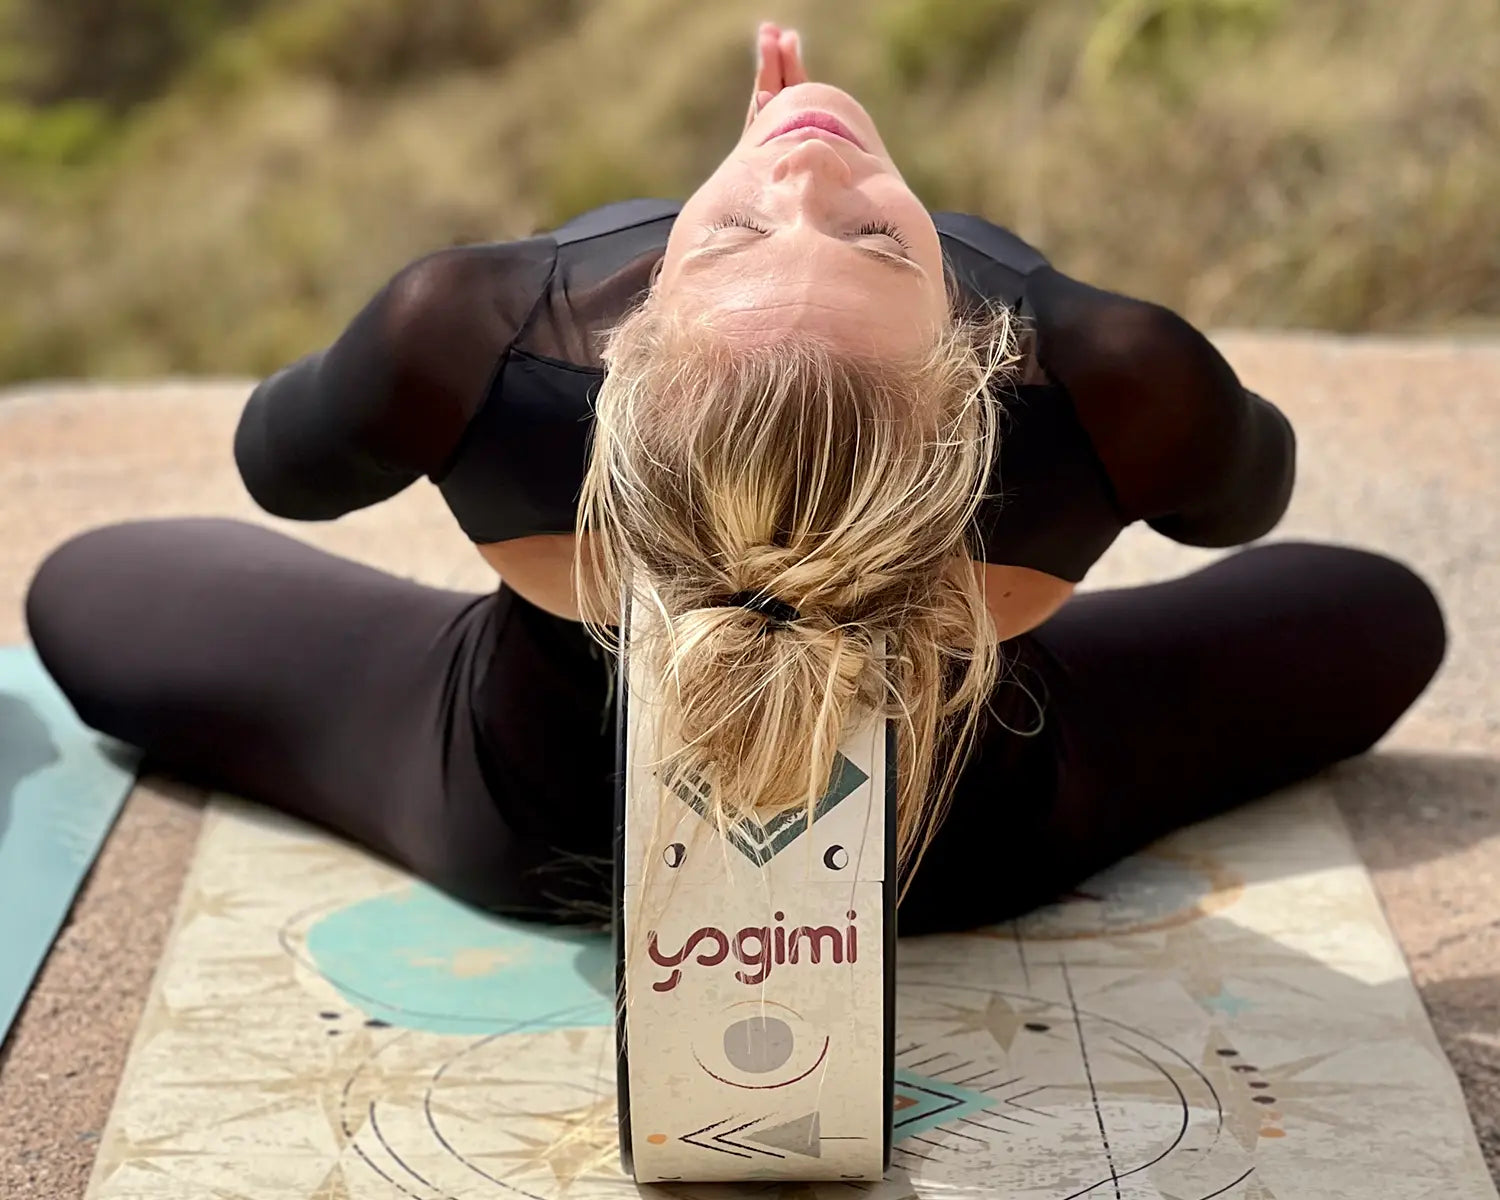 Rueda de Yoga: cómo usarla y posturas. Yogimi by Patry Montero